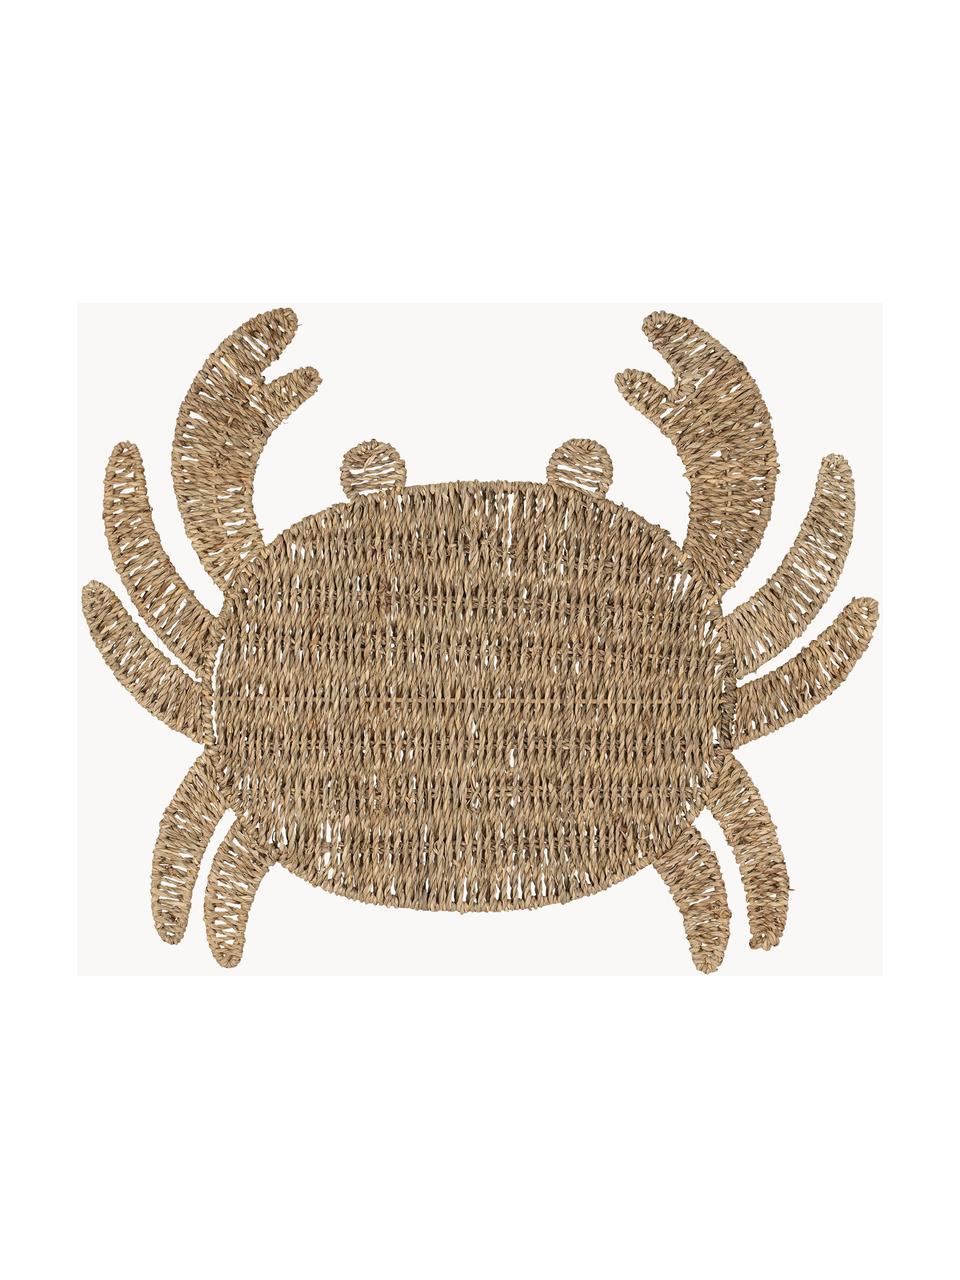 Podkładka z trawy morskiej Crab, Trawa morska, Brązowy, S 38 x D 48 cm